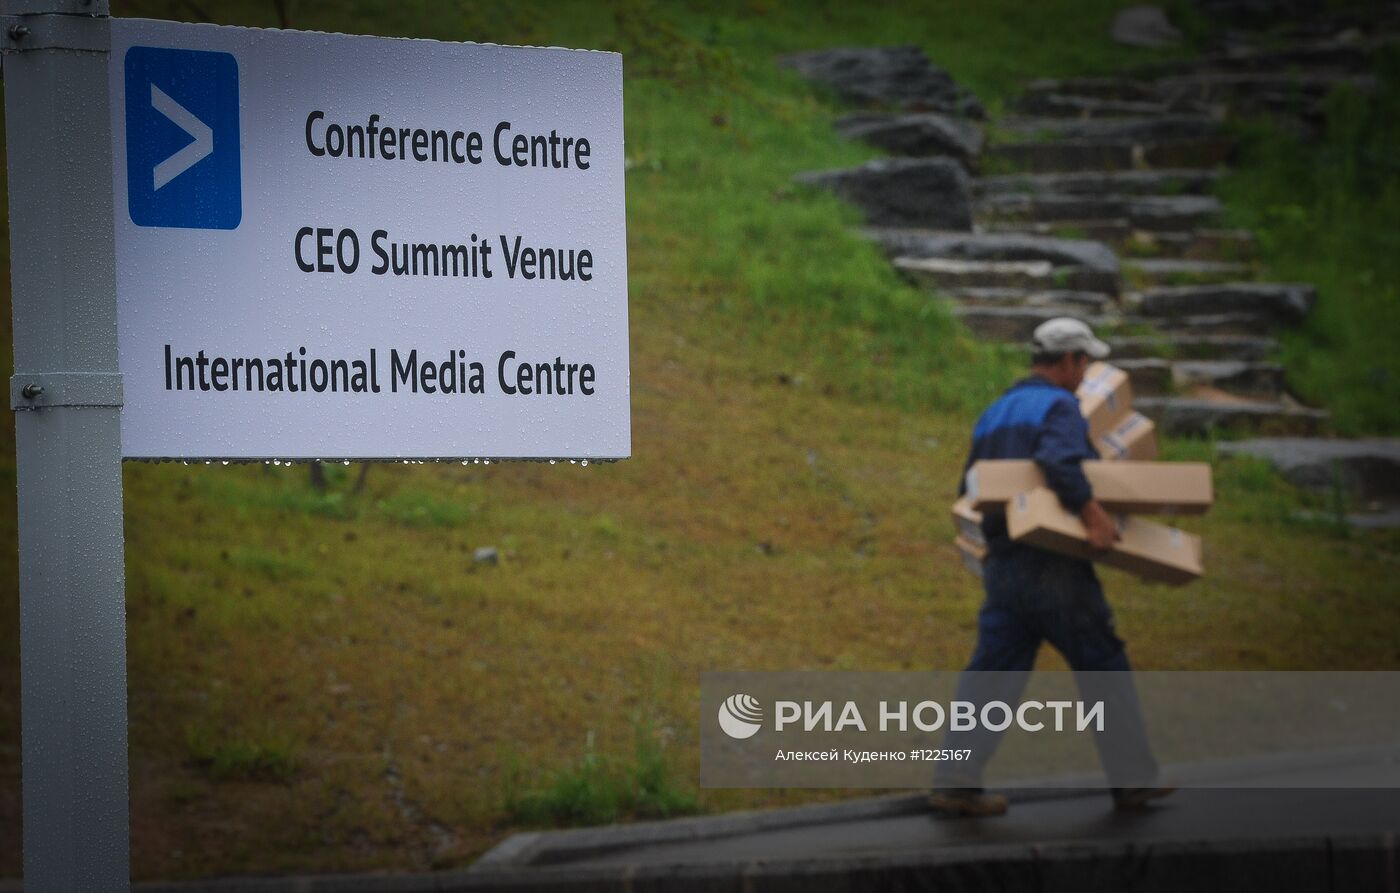 Неделя саммита АТЭС-2012 во Владивостоке